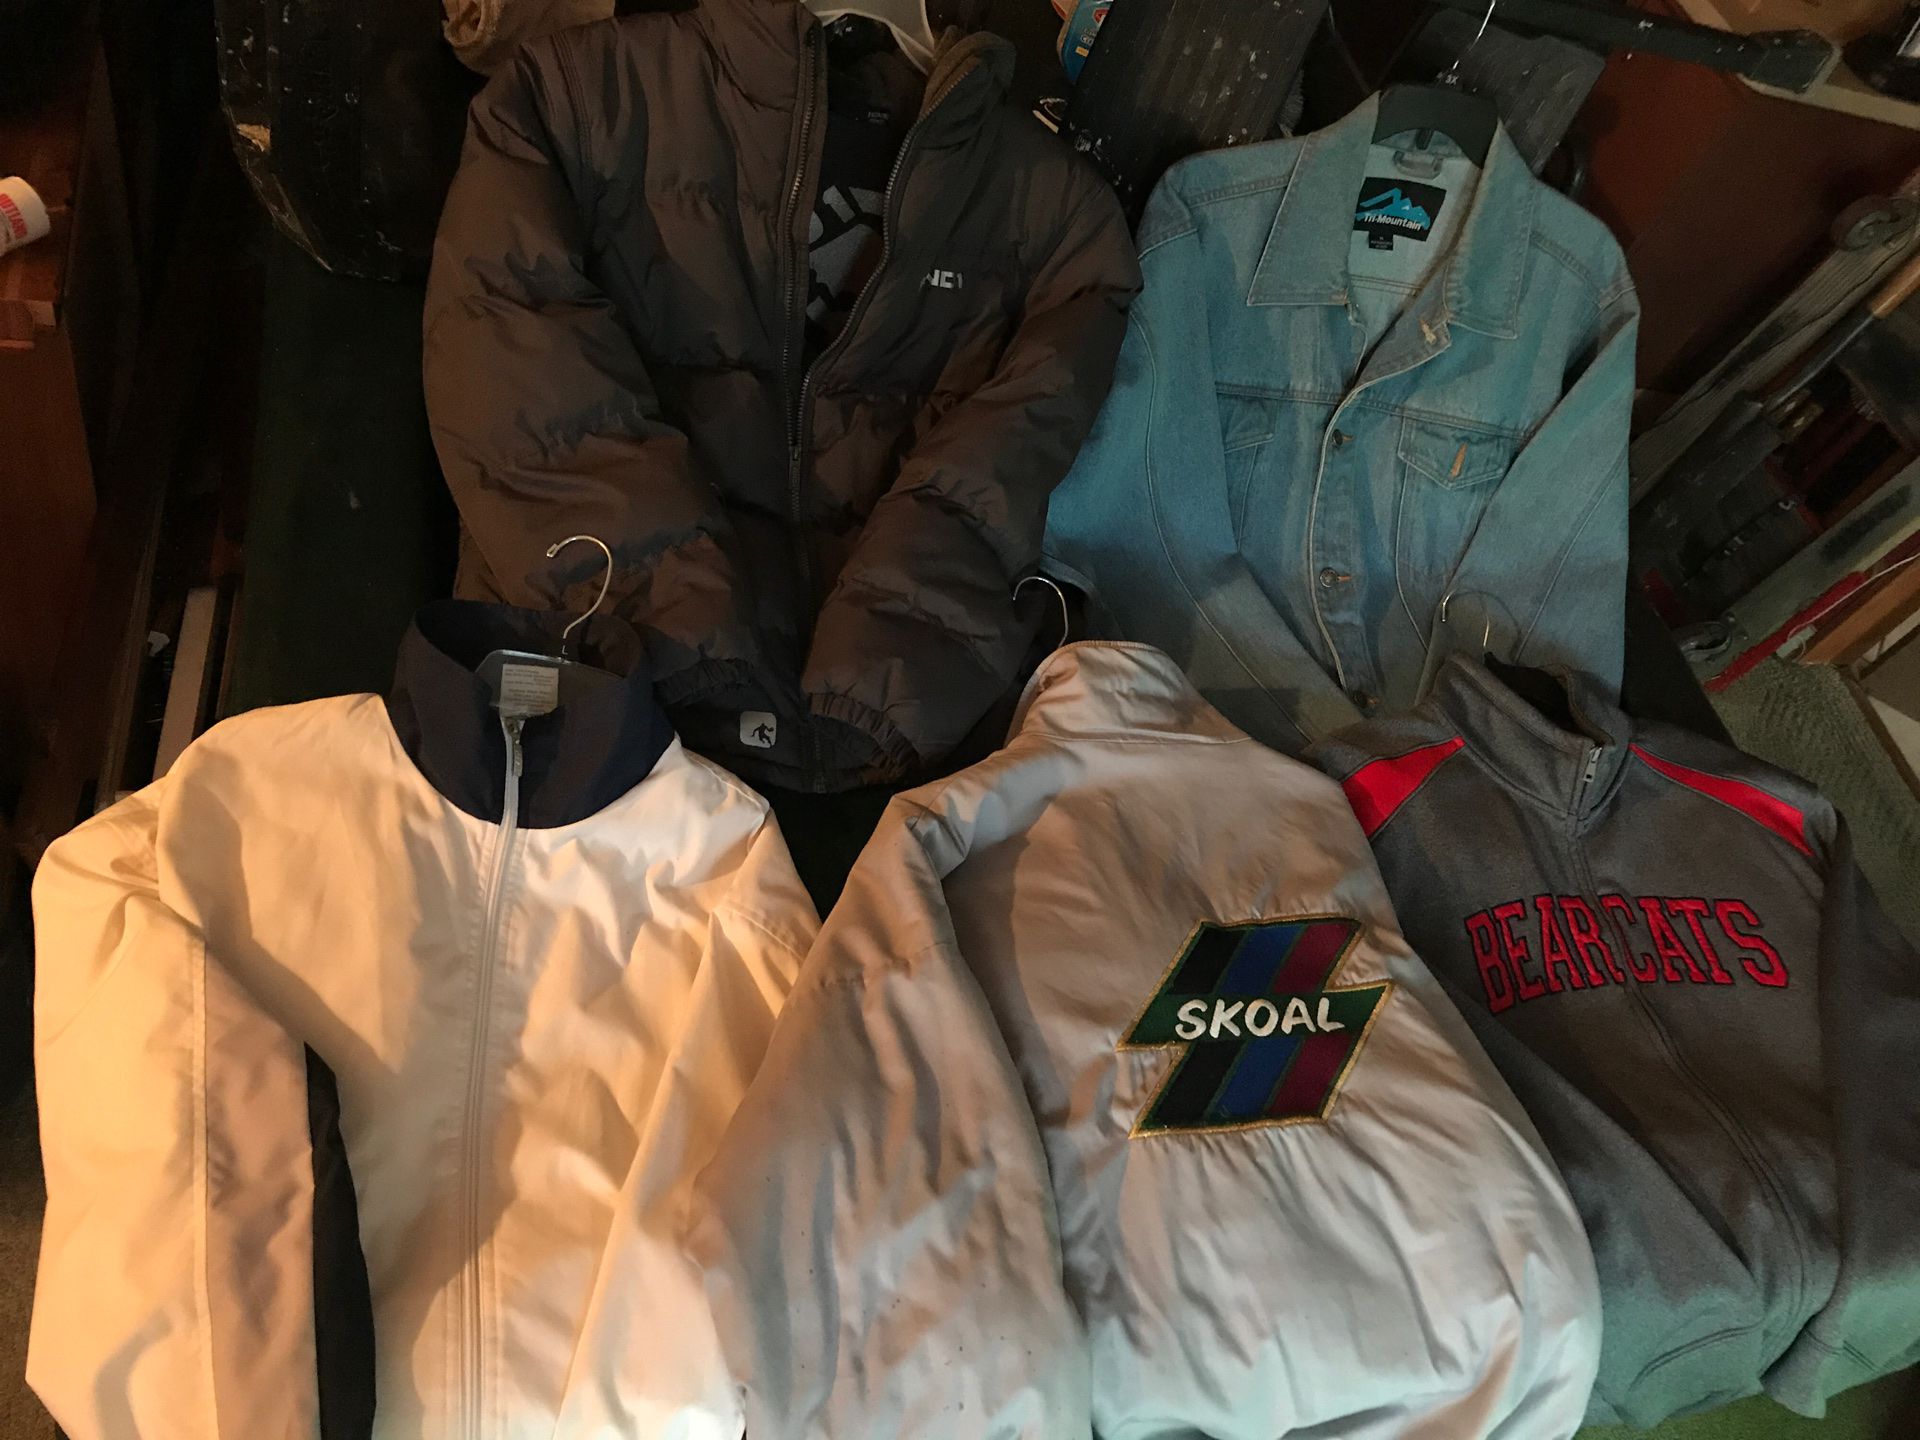 5 coats / Bearcats/jean jacket /AND1 / skoal